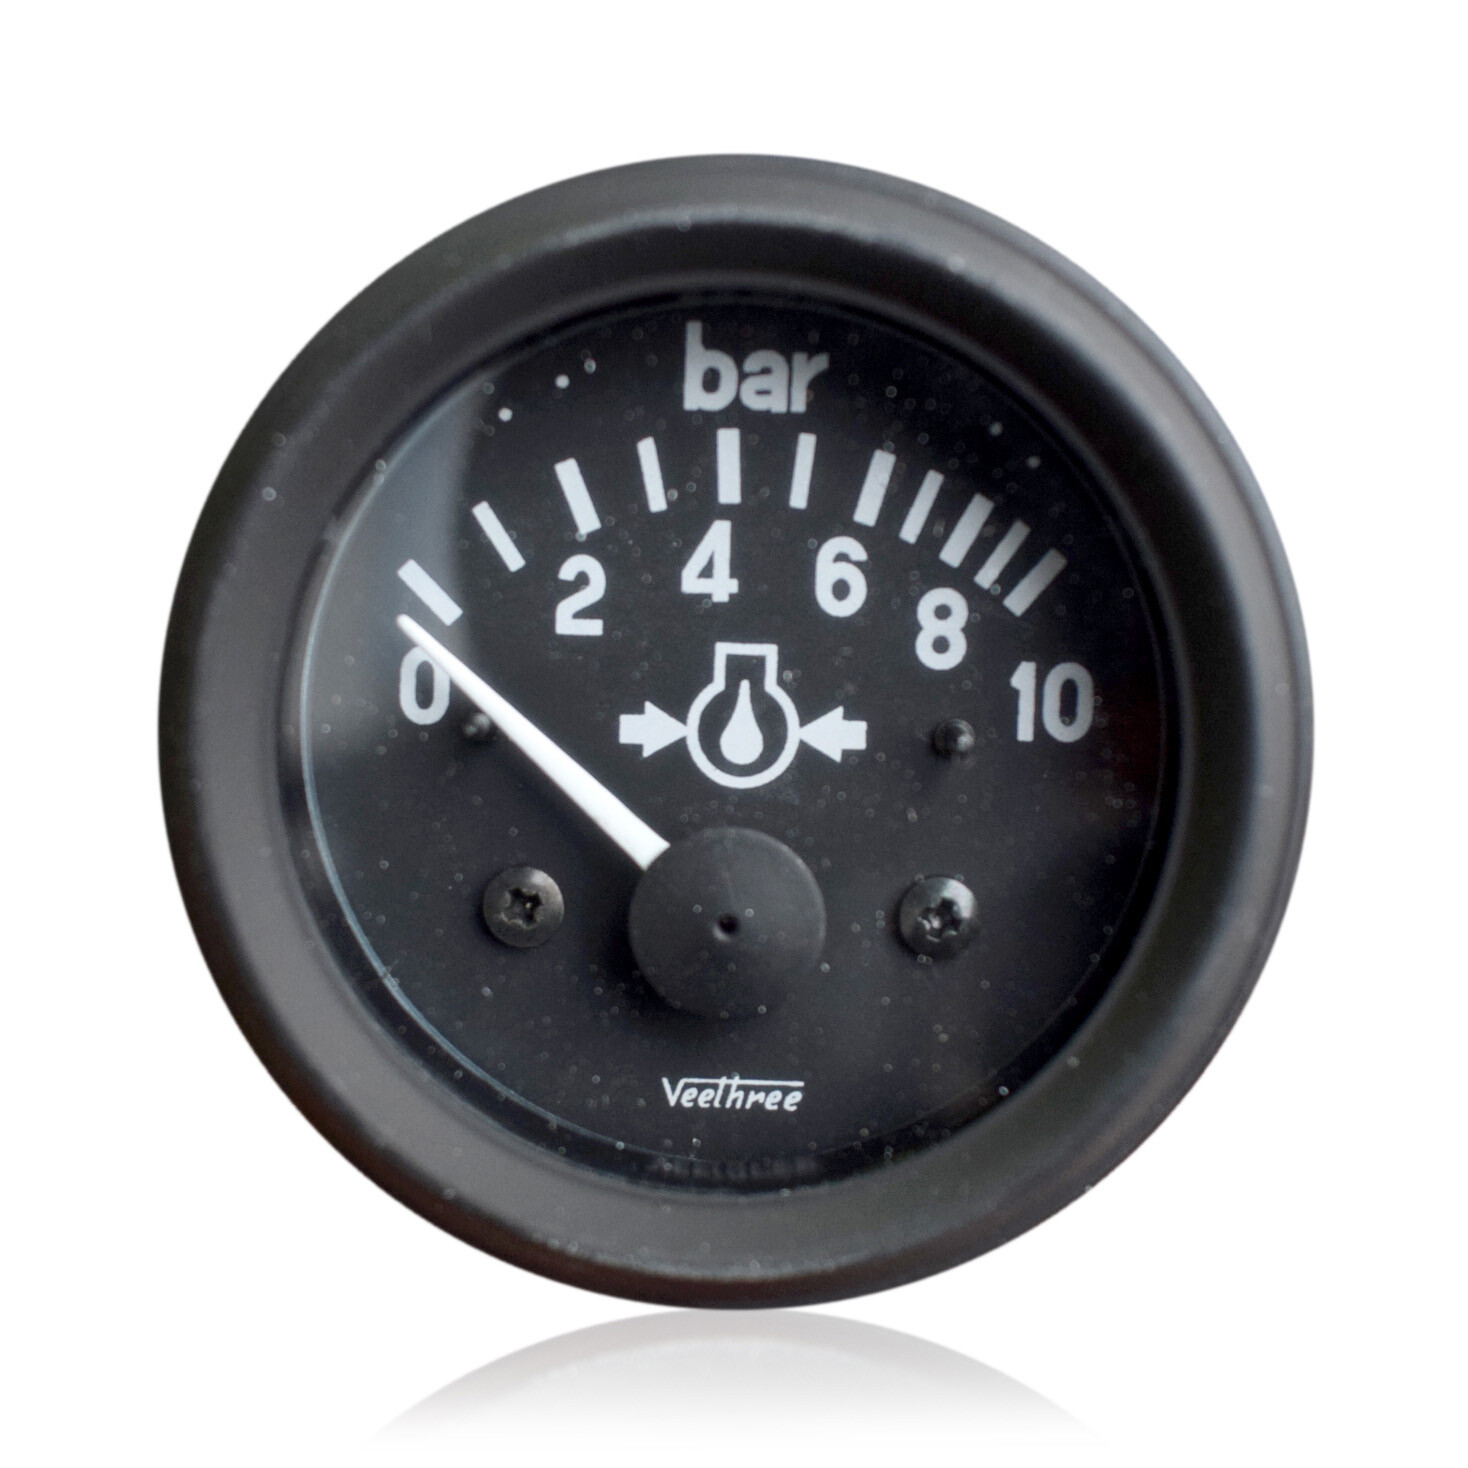 Black Veethree Oil Pressure Gauge Quality Oil Pressure Gauge Kit Oil Pressure Meter. 